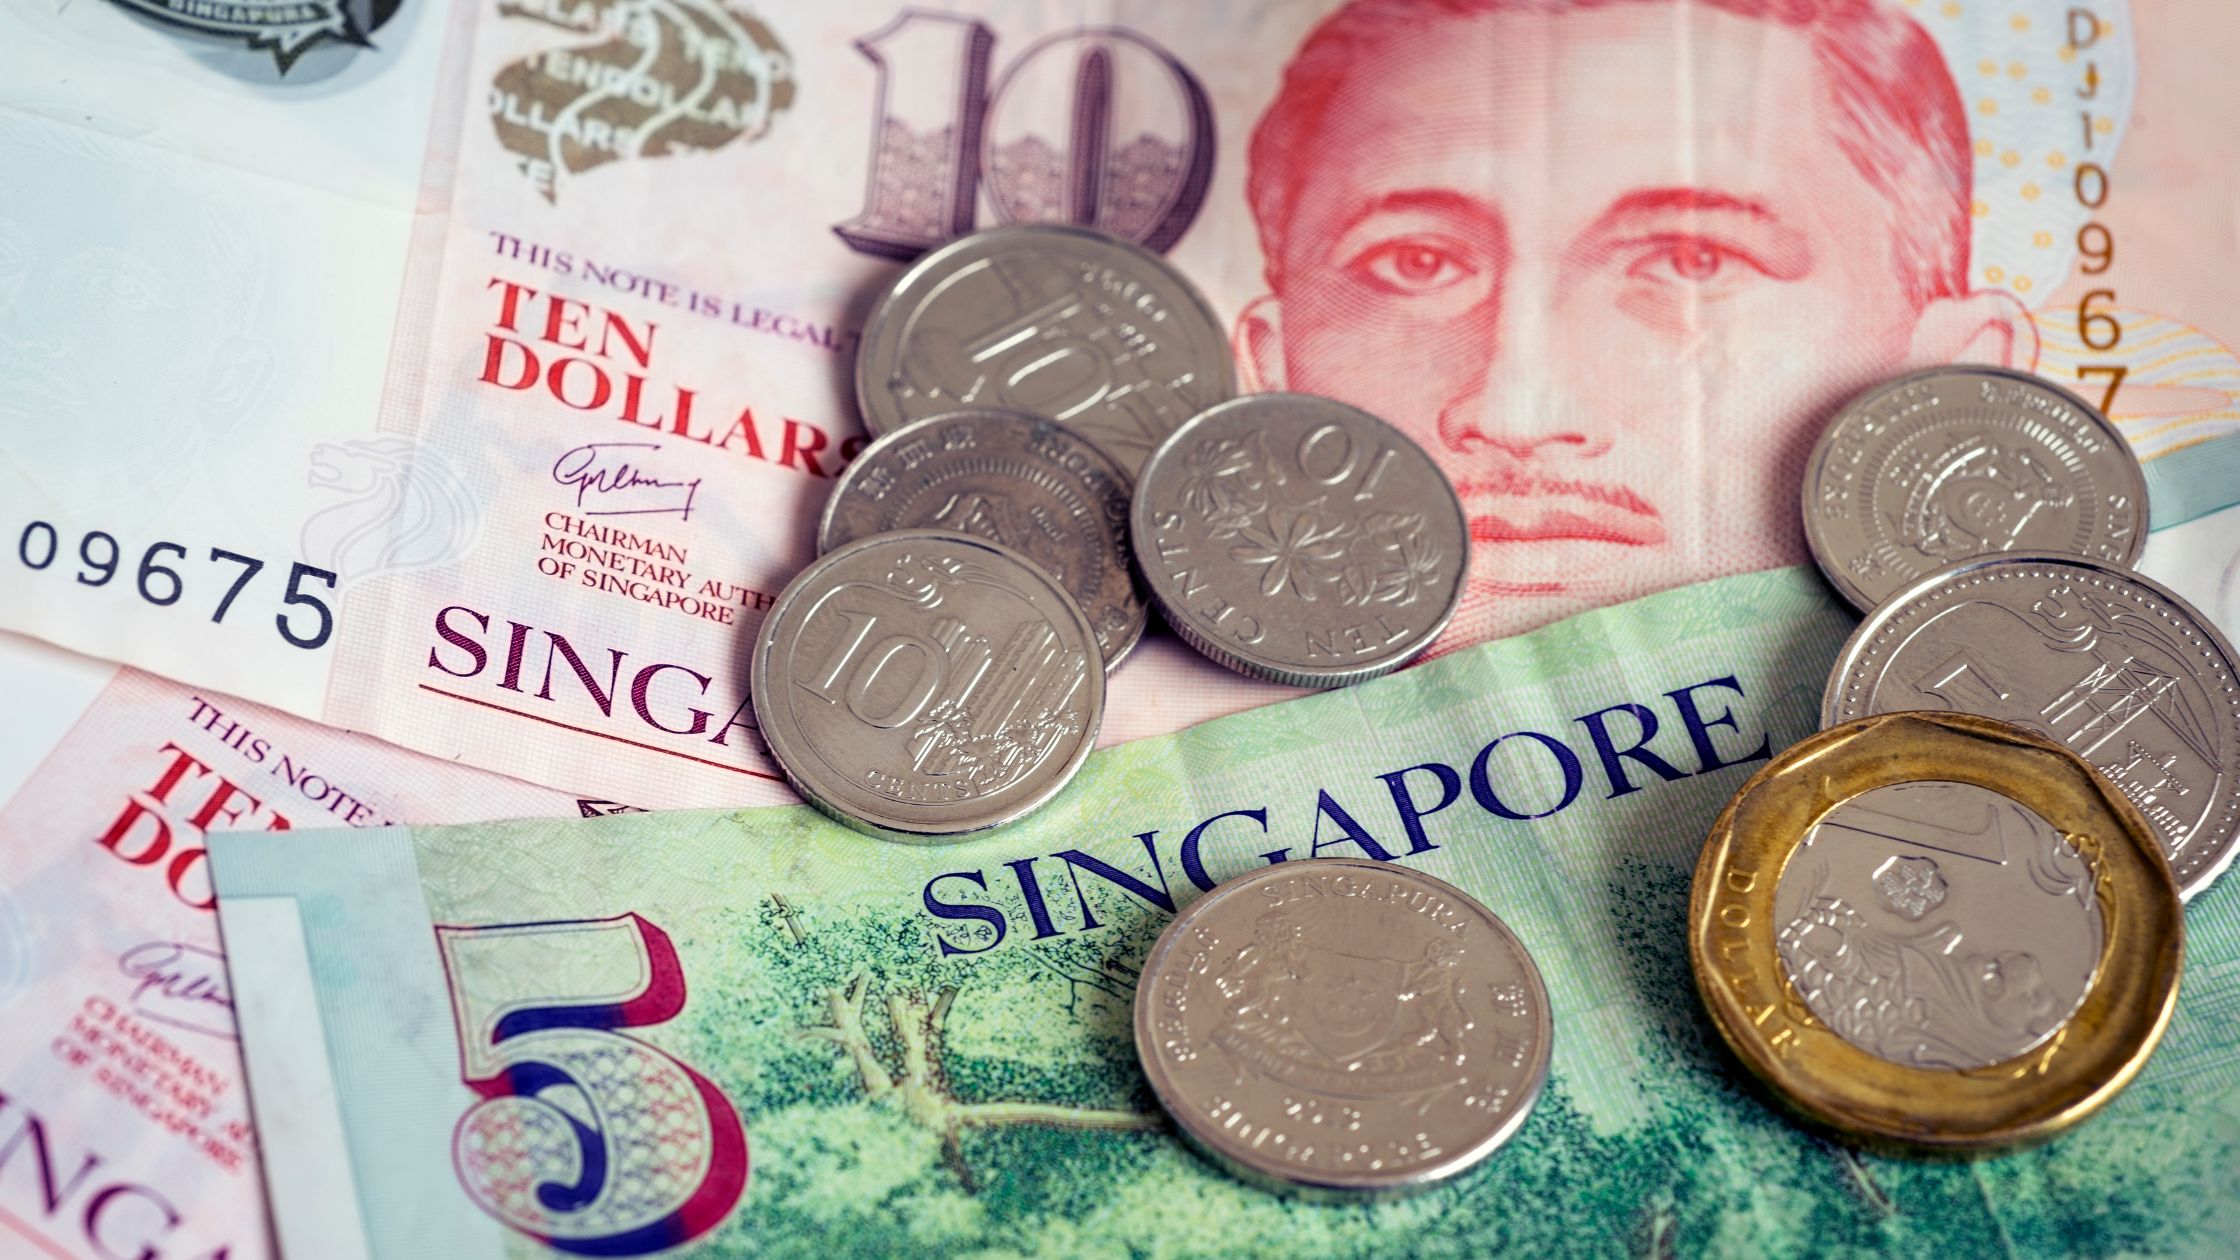 dolar singapuriano